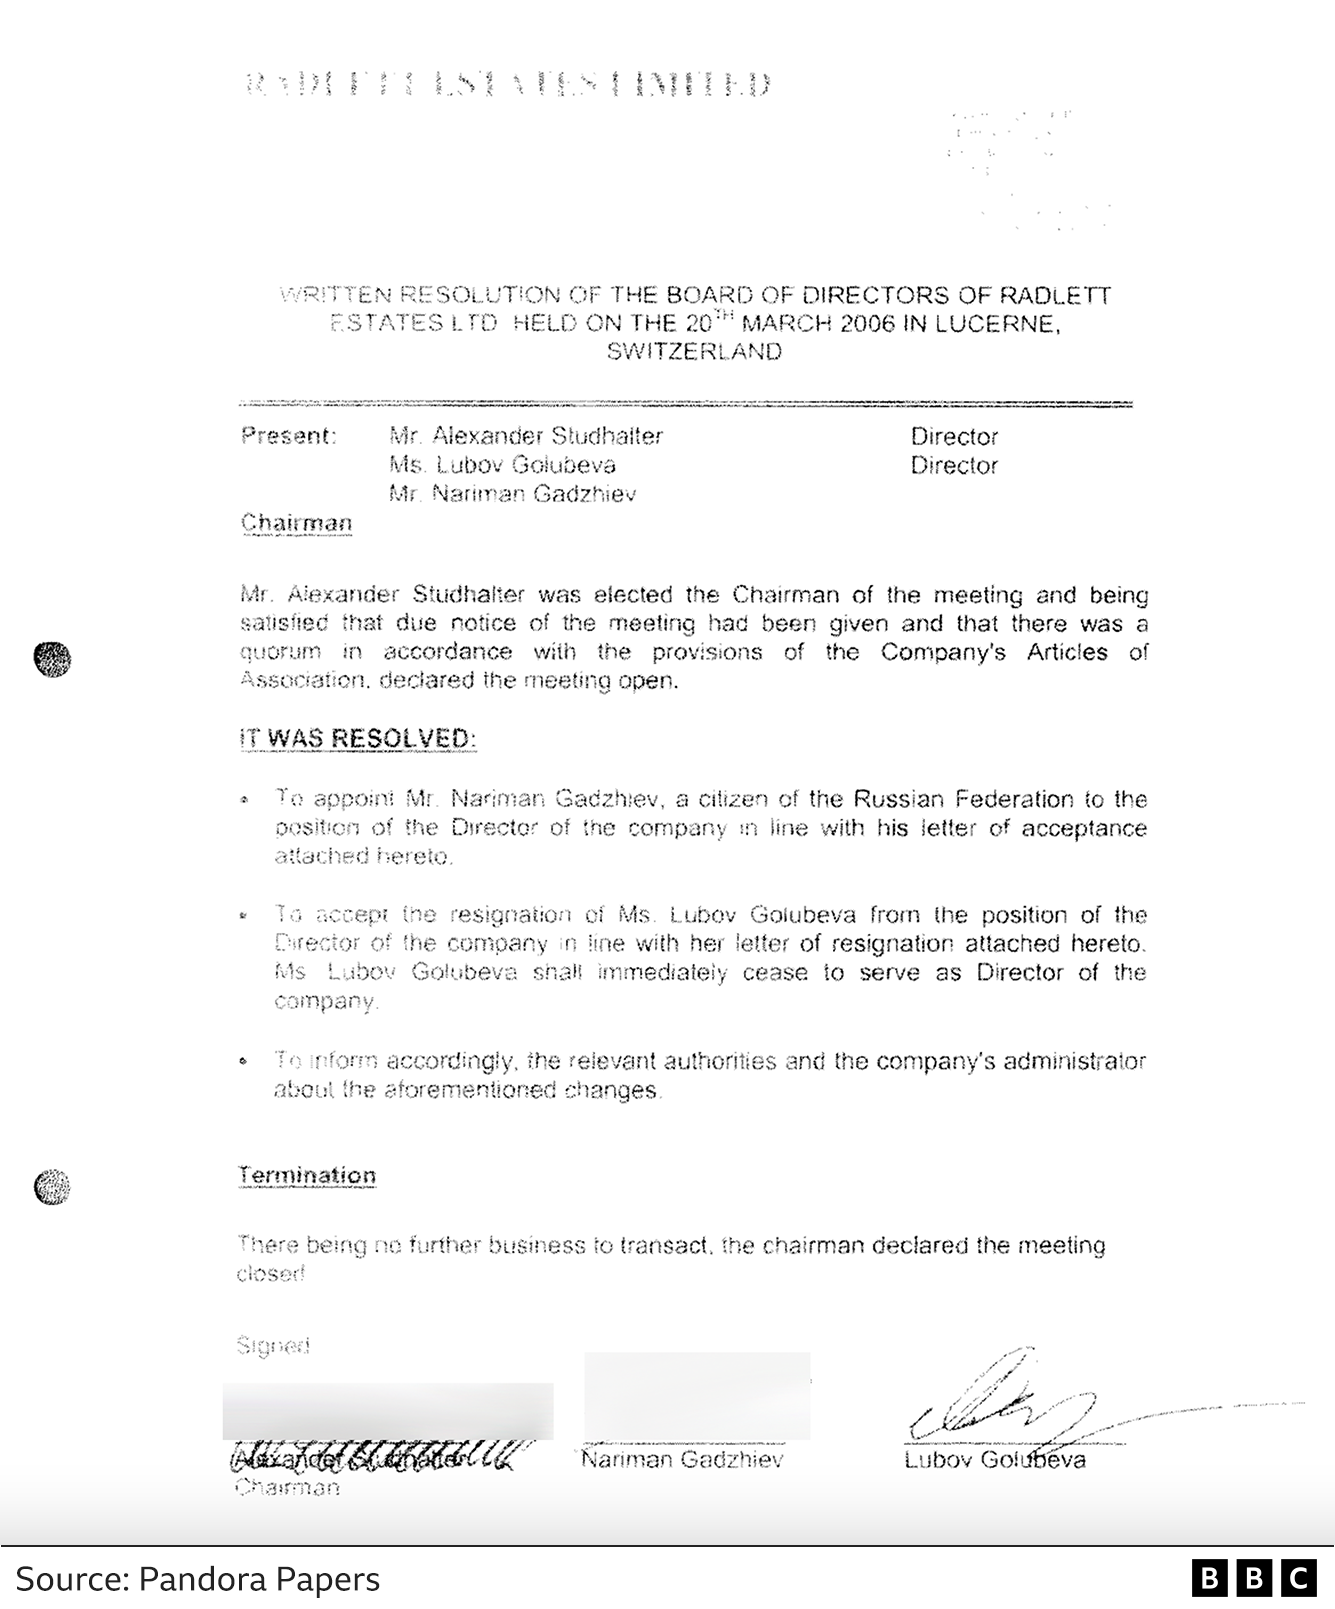 Radlett Estates Ltd 2006 document showing "Lubov Golubeva" signature